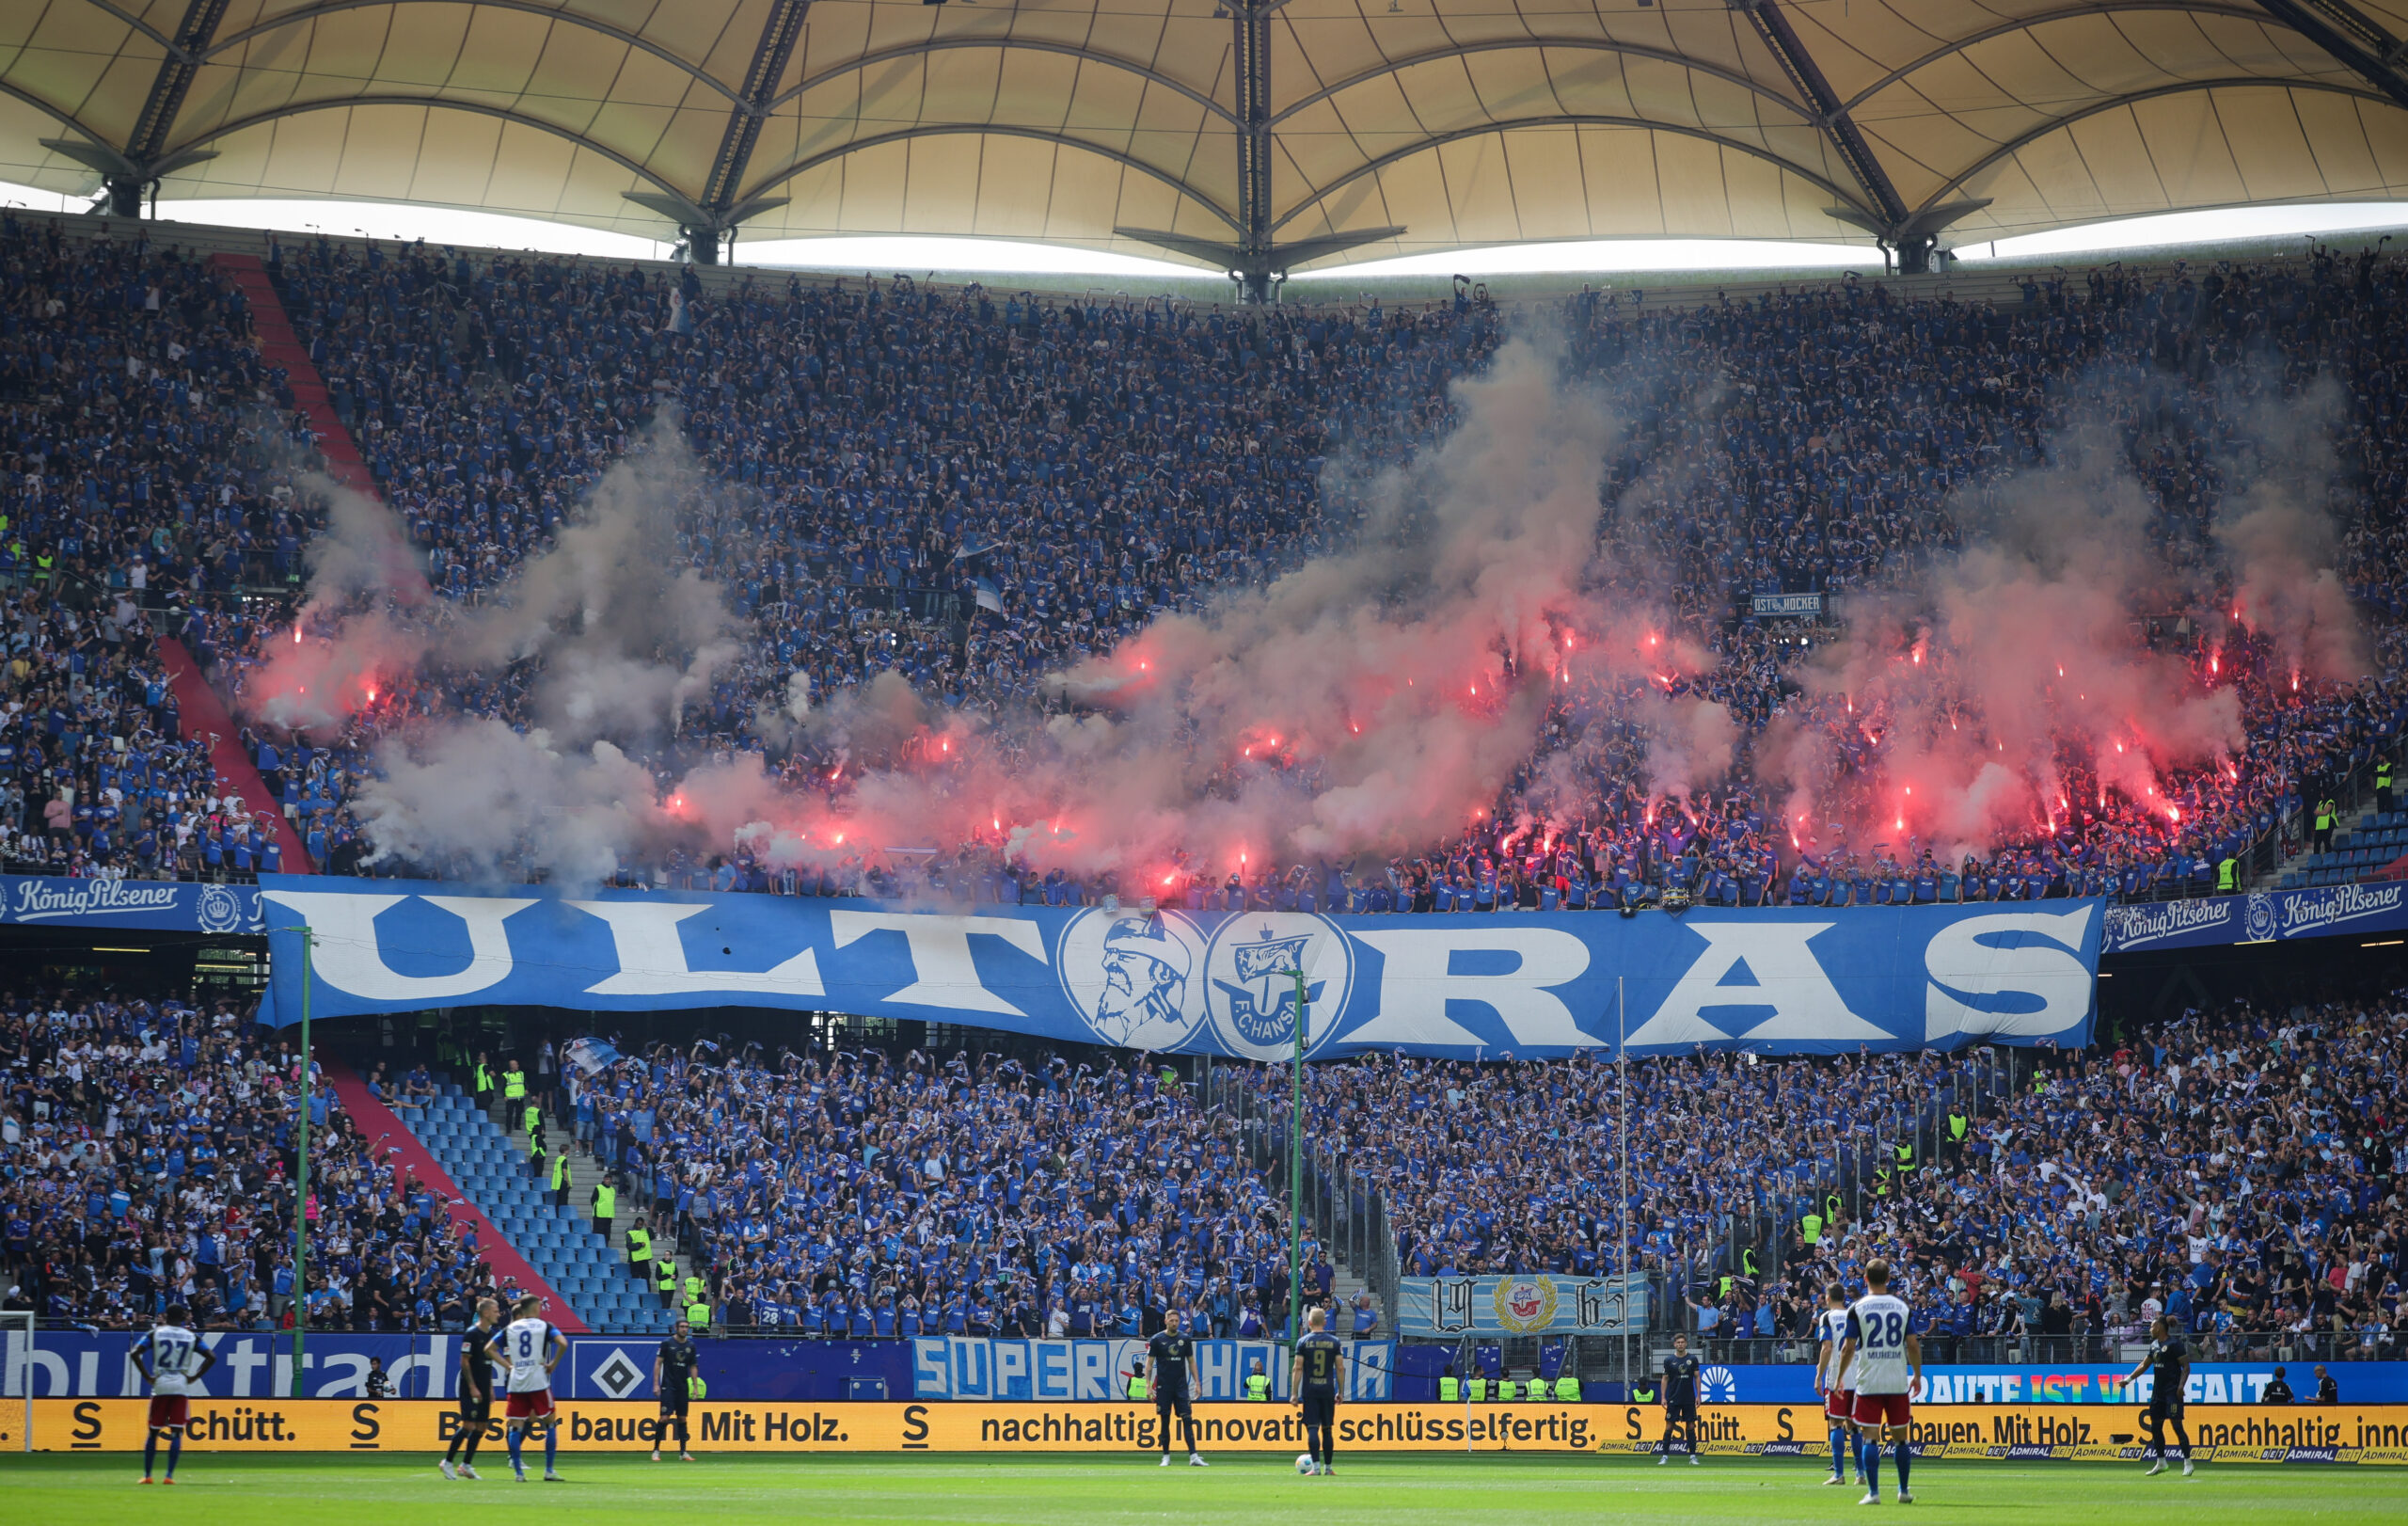 Die Rostocker Fans zündeten reichlich Pyrotechnik – in und vor dem Stadion.